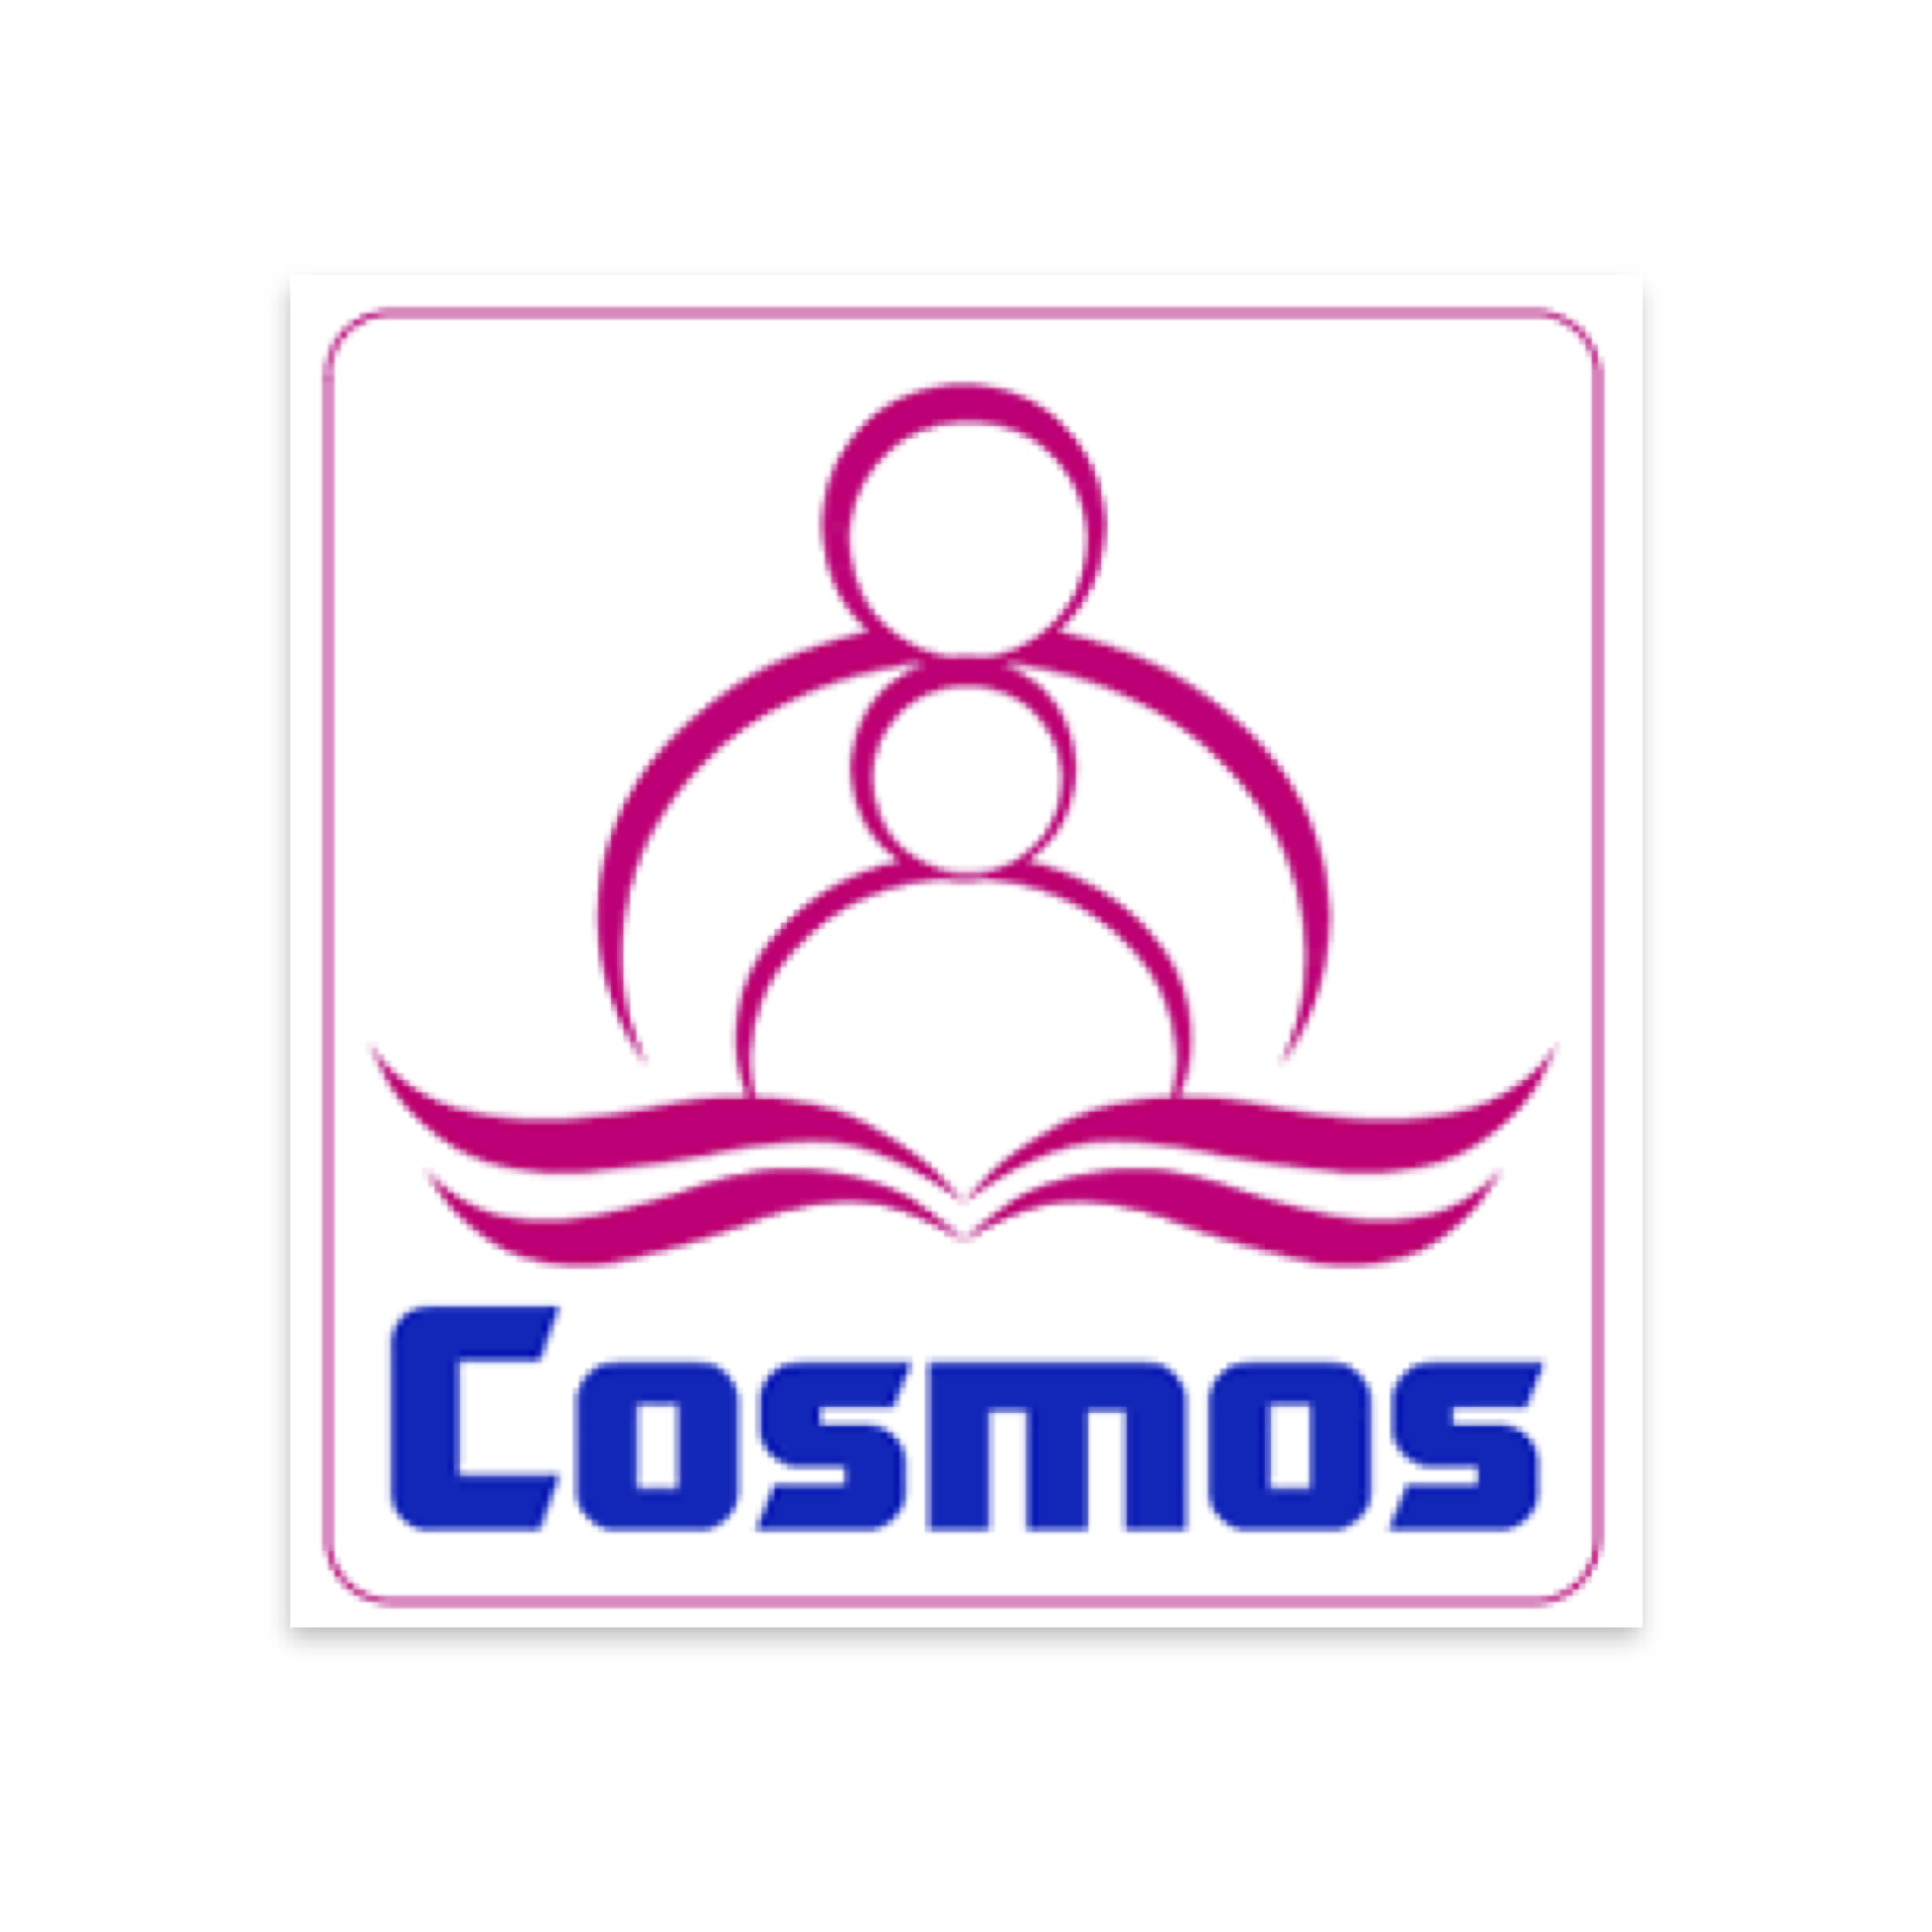  cosmos